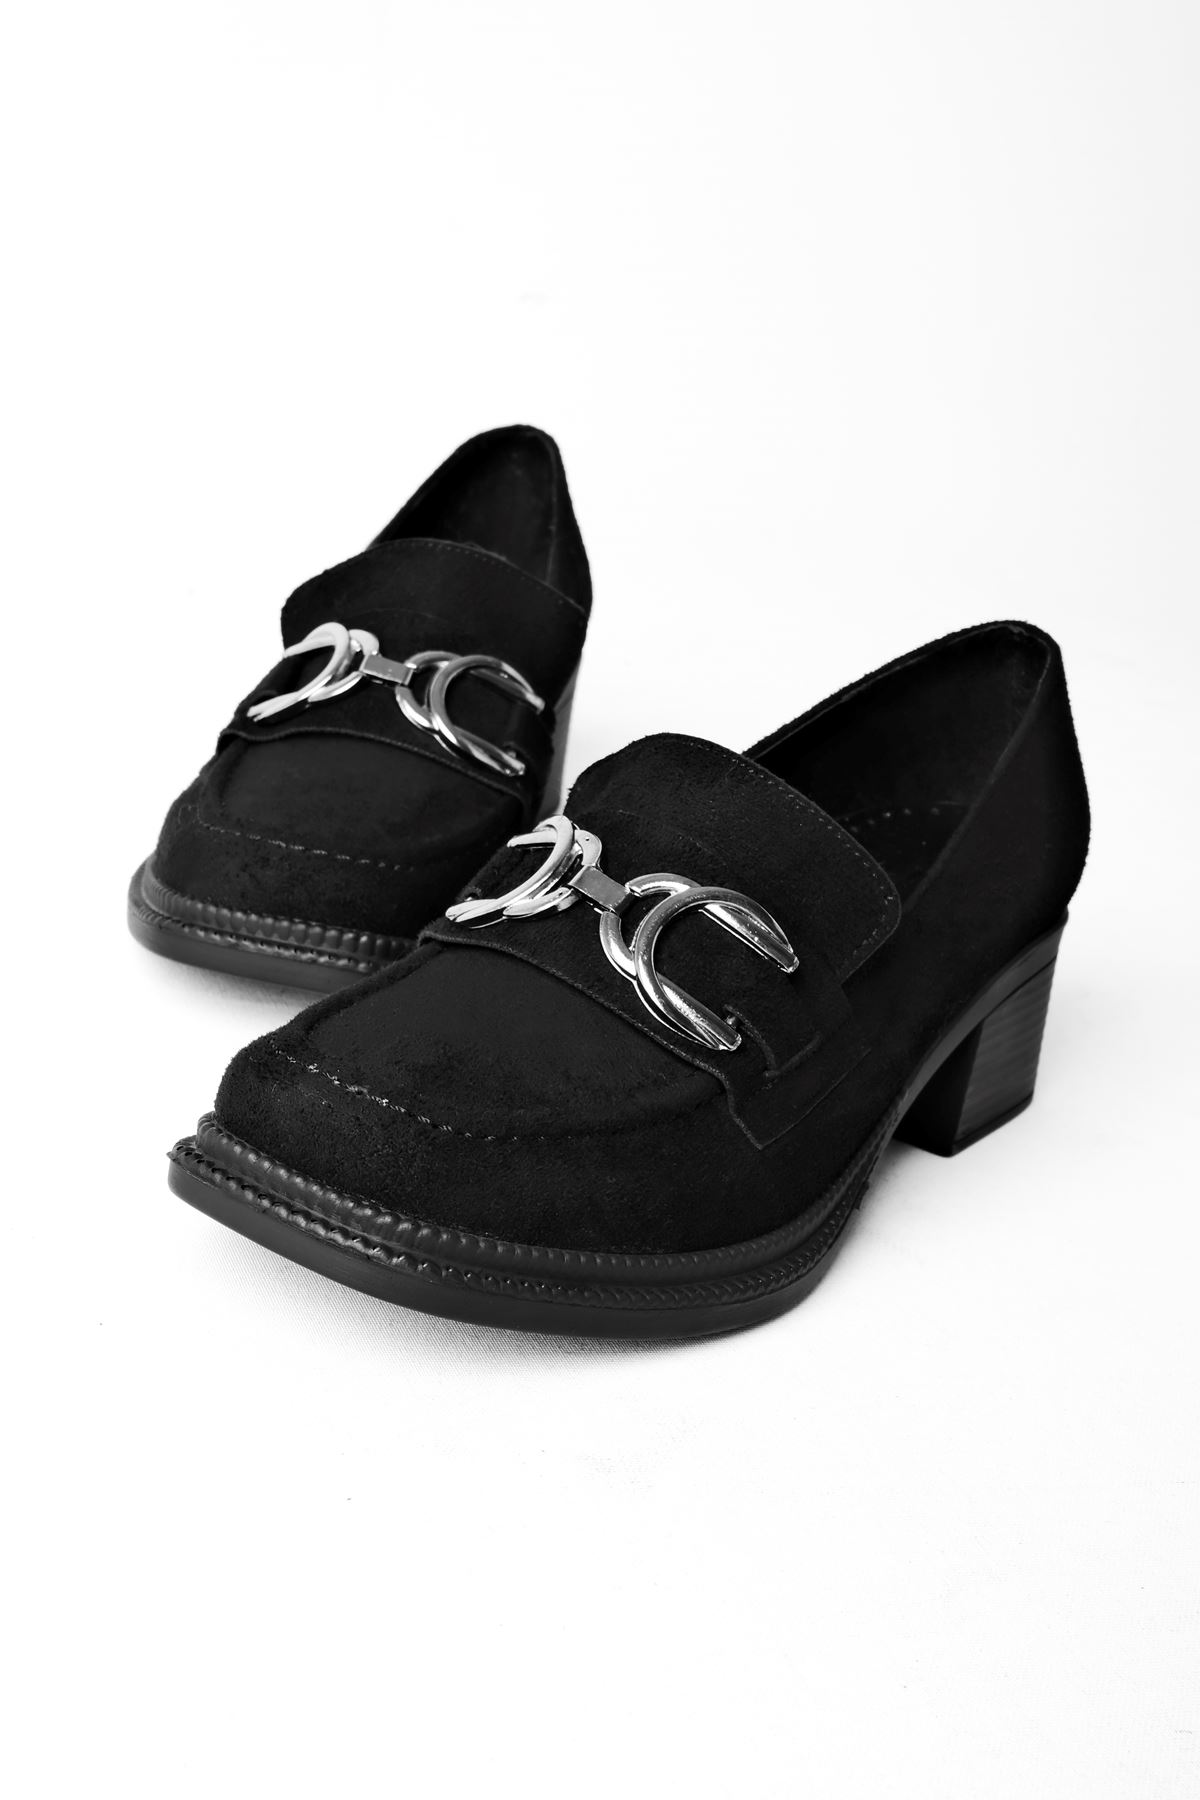 Tenvila Küt Burun Çift Toka Detaylı Topuklu Ayakkabı-S.Siyah